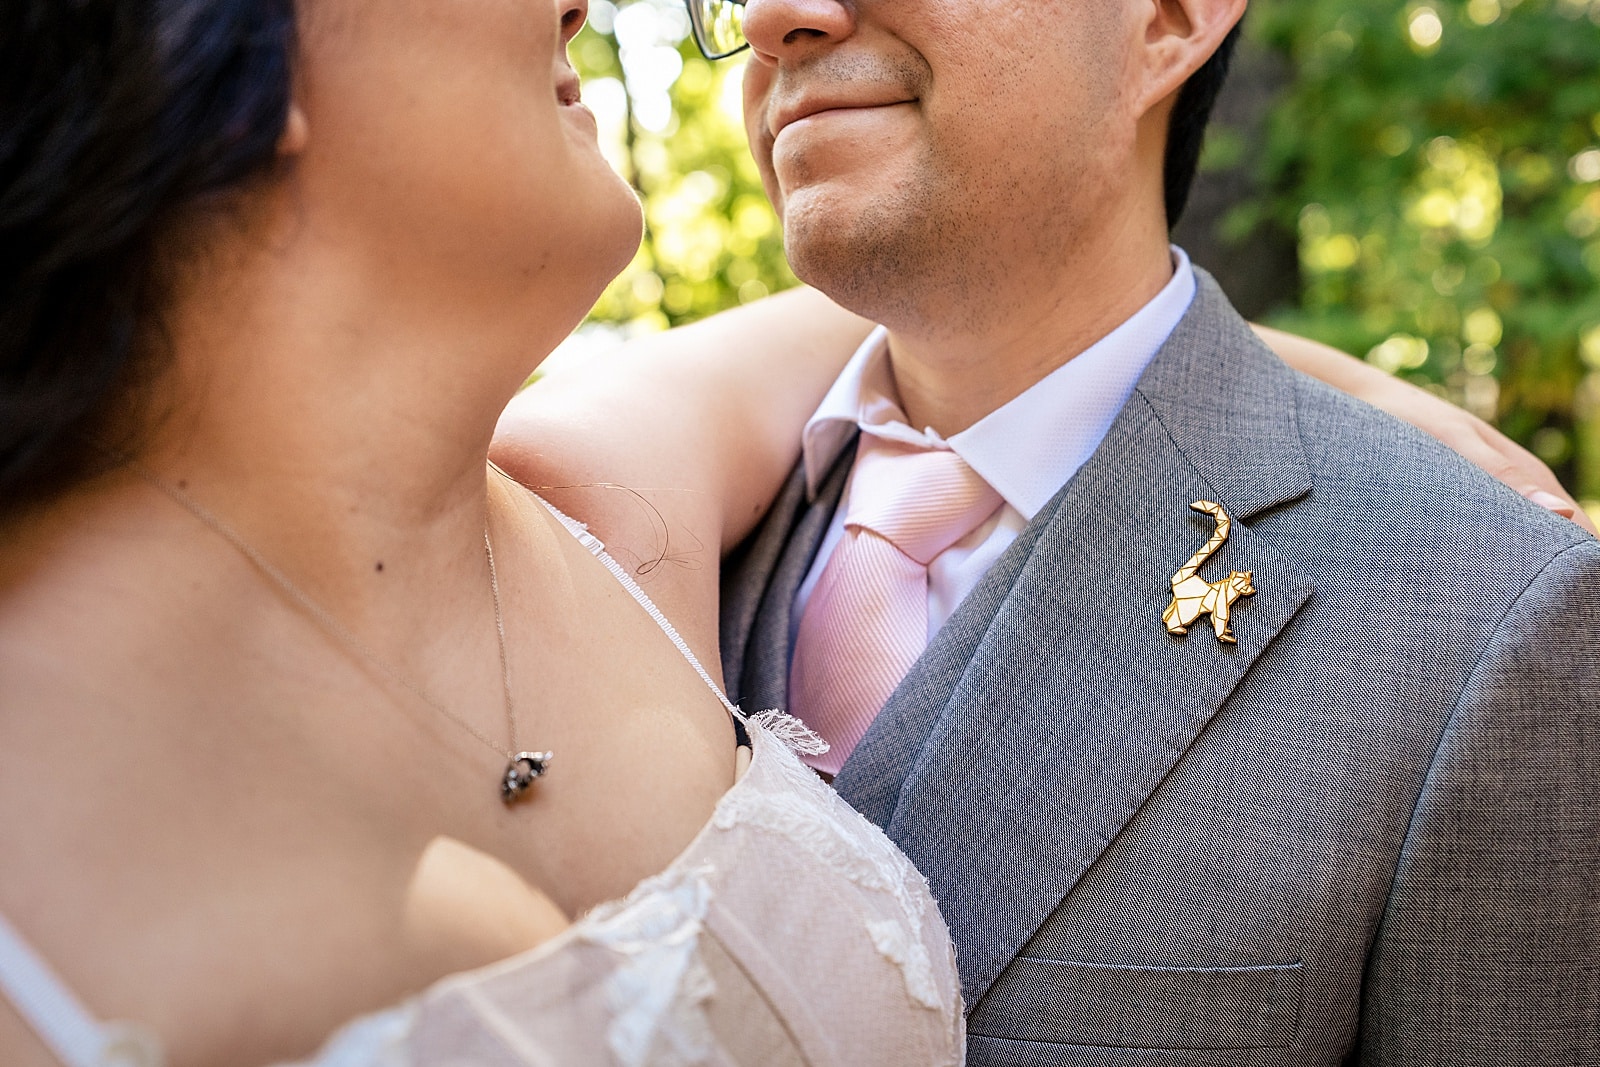 a lemur lapel pin and a lemur necklace were the perfect details for this Duke lemur center wedding